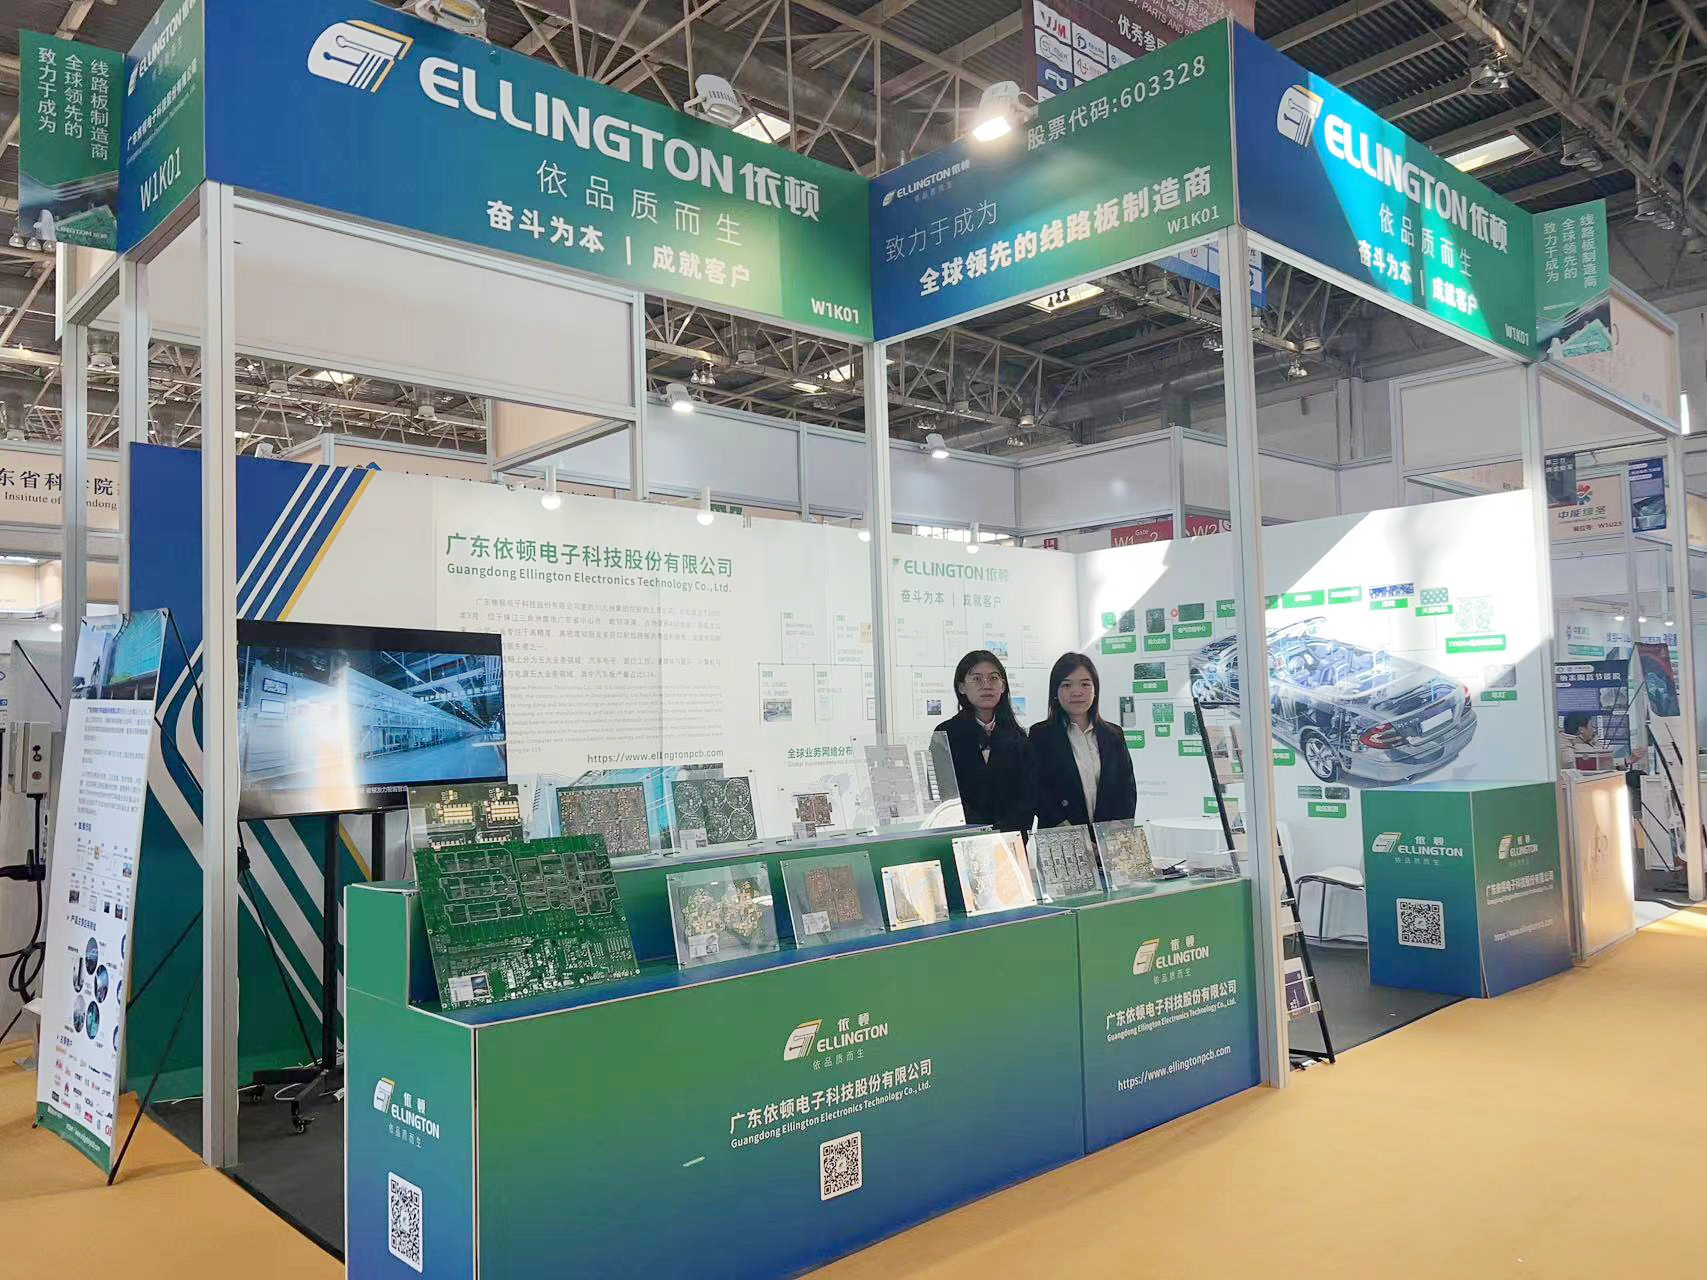 铁算神算盘亮相中国国际新能源汽车技术、零部件及服务展览会